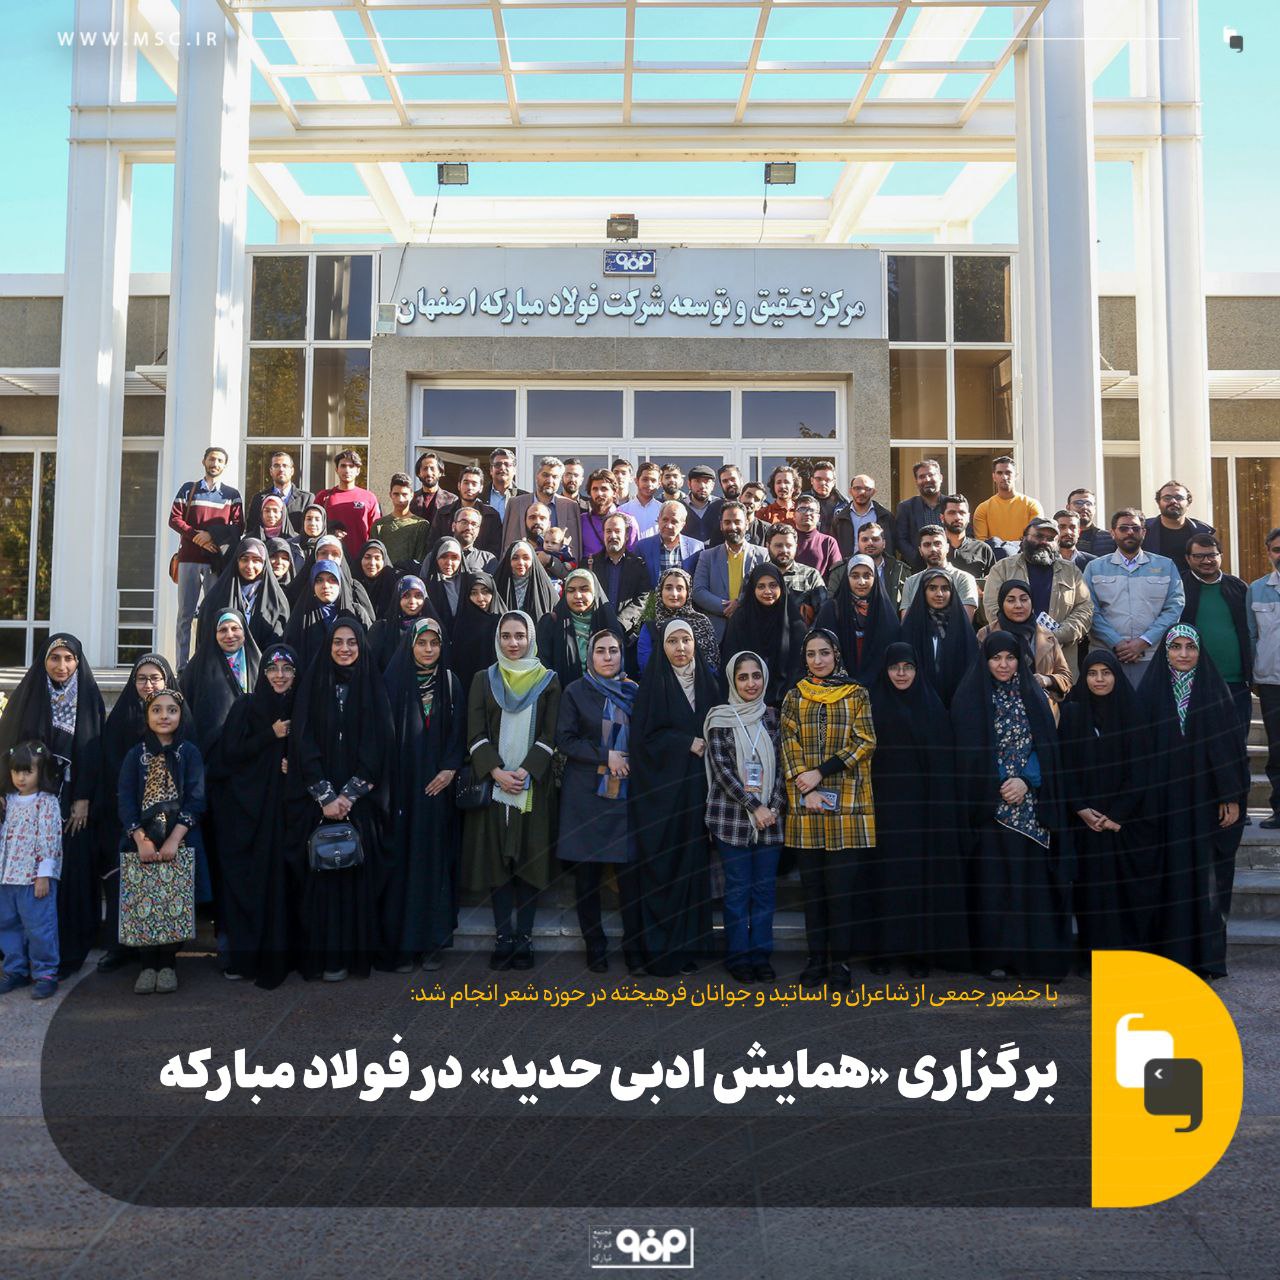 تجارت گردان | همایش ادبی «حدید» با حضور ۱۲۰ شاعر بنام کشور به همت روابط عمومی فولاد مبارکه برگزار شد